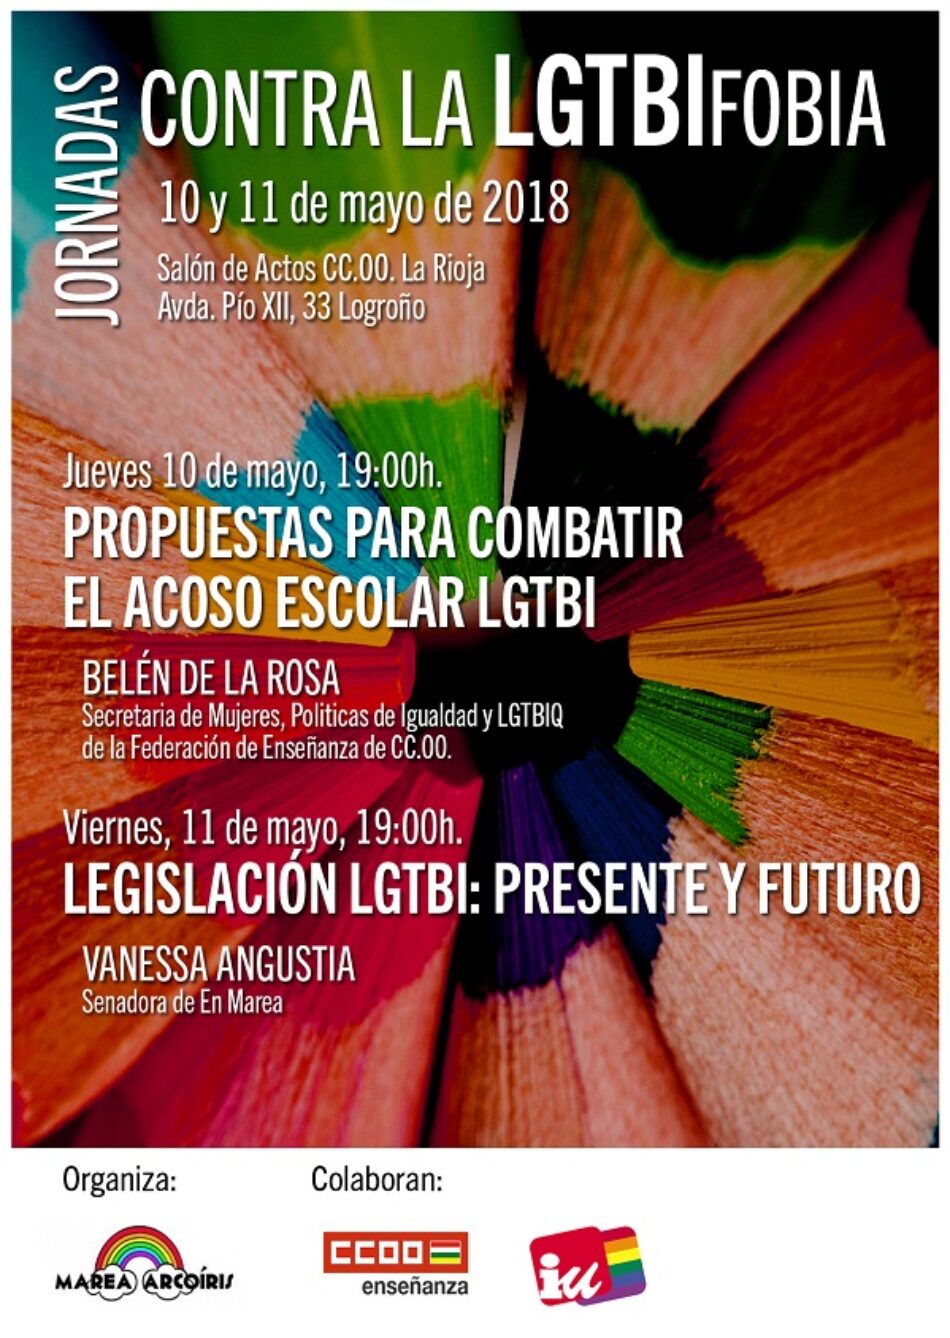 La Asociación Marea Arcoíris organiza unas jornadas contra la LGTBIfobia